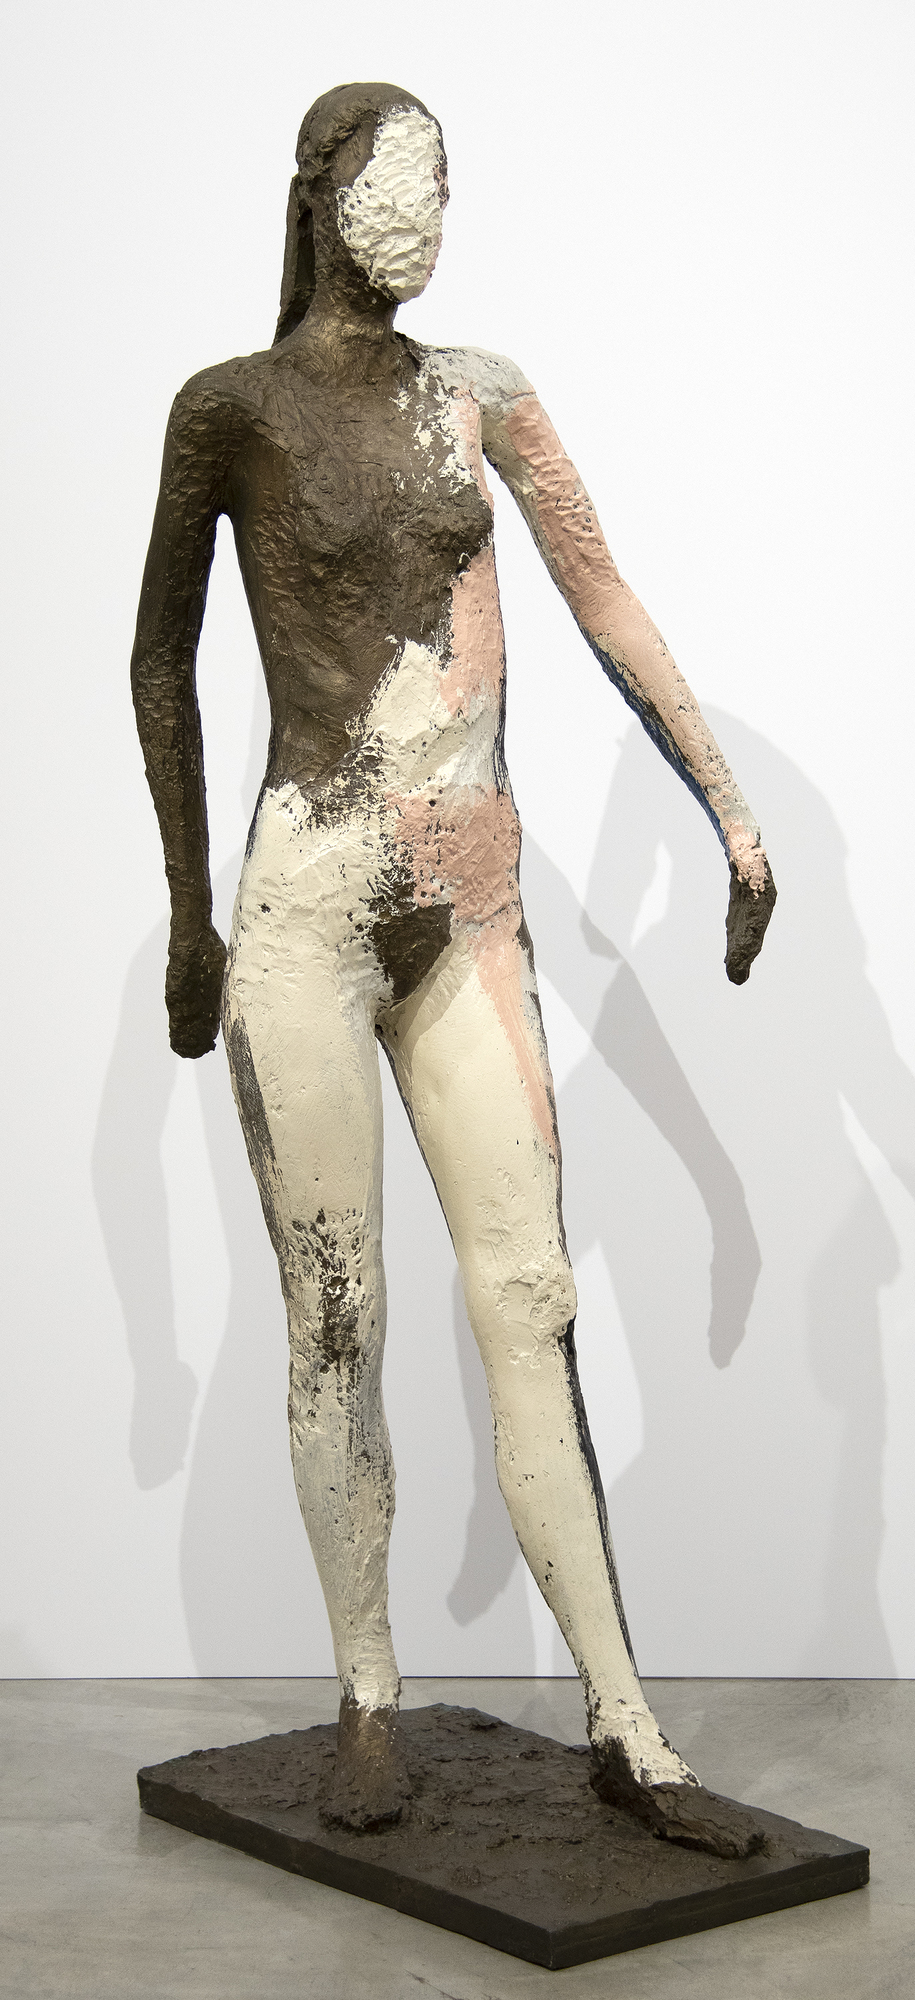 Manuel Neri war eine zentrale Figur in der figurativen Bewegung der Bay Area in den 1960er Jahren. Anstelle abstrakter Formen betonte die Gruppe die Emotionen durch die Kraft der menschlichen Form. Das vorliegende Werk, &quot;Ohne Titel&quot; (1982), erforscht die weibliche Form in Lebensgröße.  Neri zog es vor, während seiner 60-jährigen Karriere mit nur einem Modell zu arbeiten, Maria Julia Klimenko. Das Fehlen eines Gesichts in vielen seiner Skulpturen verleiht ihm ein Element des Geheimnisses und der Mehrdeutigkeit. Der Schwerpunkt der Komposition in &quot;Ohne Titel&quot; liegt auf der Struktur und Form der Figur.  Manuel Neri ist in zahlreichen Museumssammlungen weltweit vertreten, darunter die Addison Gallery/Phillips Academy, die Anderson Collection der Stanford University, das Art Institute of Chicago, das Cantor Arts Center der Stanford University, das Cincinnati Art Museum, das Crocker Art Museum, Sacramento, CA, das Denver Art Museum, das El Paso Museum of Art, Texas, die Fine Arts Museums of San Francisco, die Harvard University Art Museums, das Hirshhorn Museum and Sculpture Garden, Washington, D.C.; Honolulu Museum of Art, The Metropolitan Museum of Art, New York und die National Gallery of Art, Washington, DC.